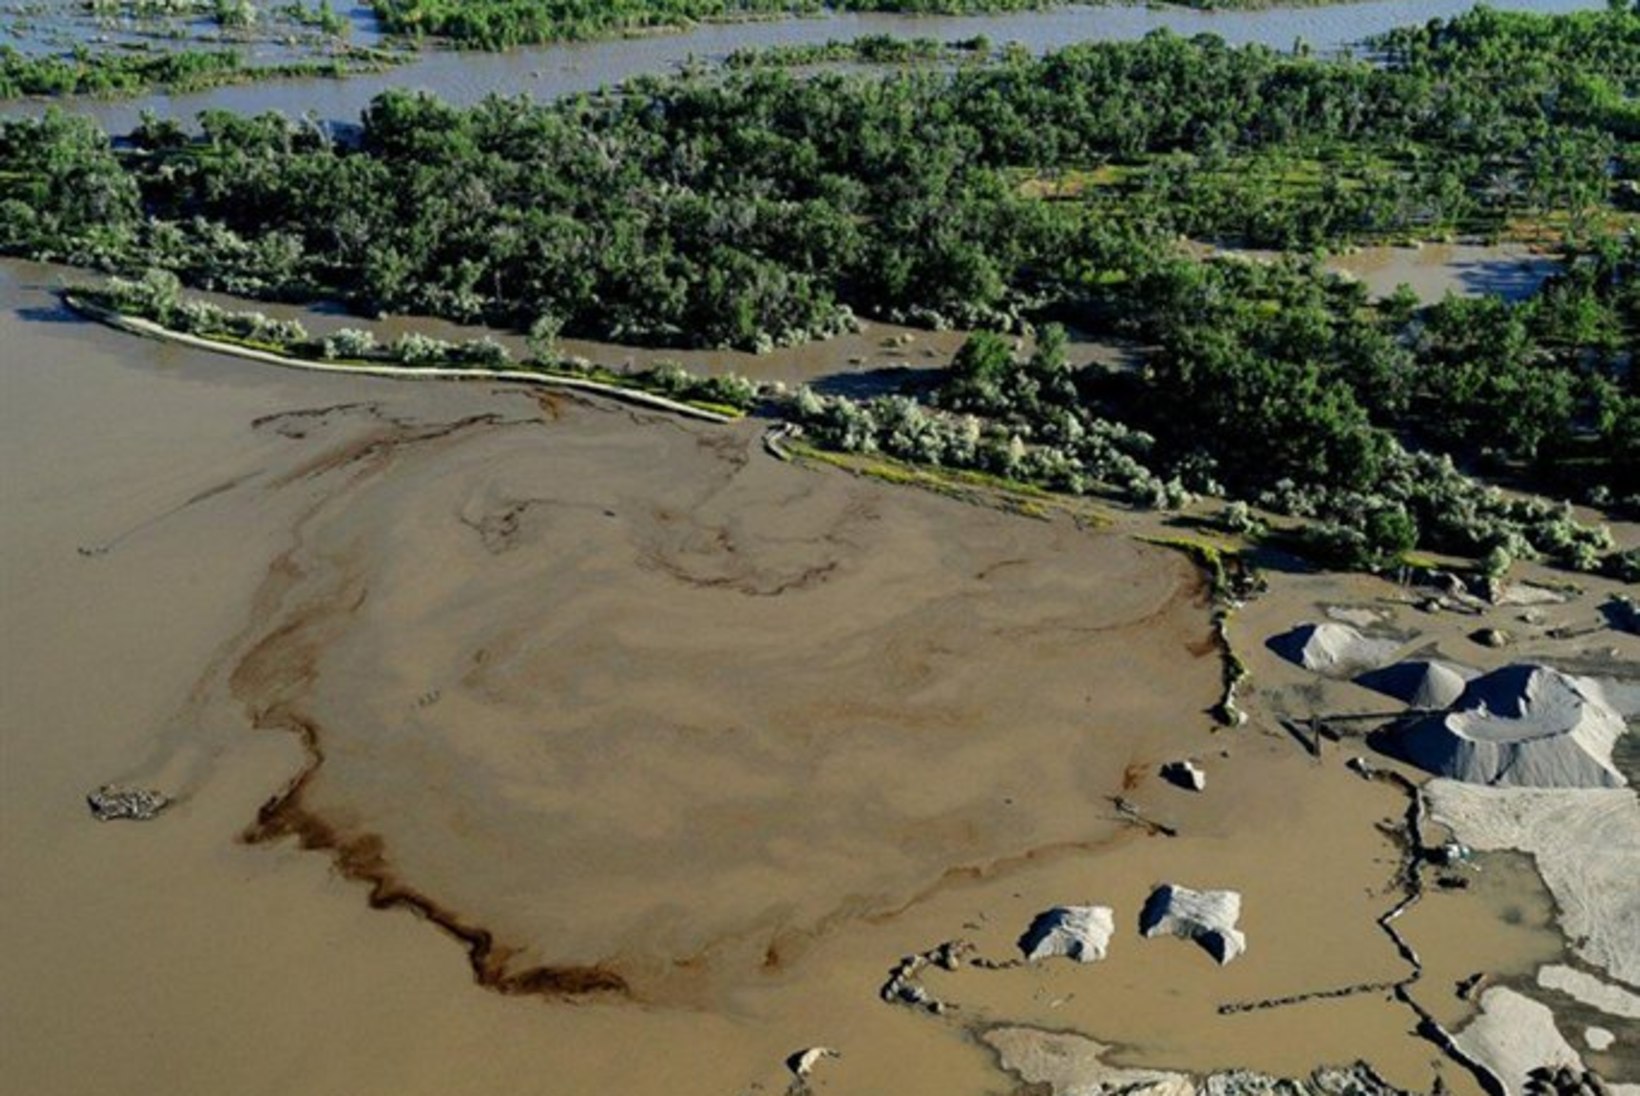 Yellowstone'i jõgi reostus naftatoru lõhkemise tagajärjel